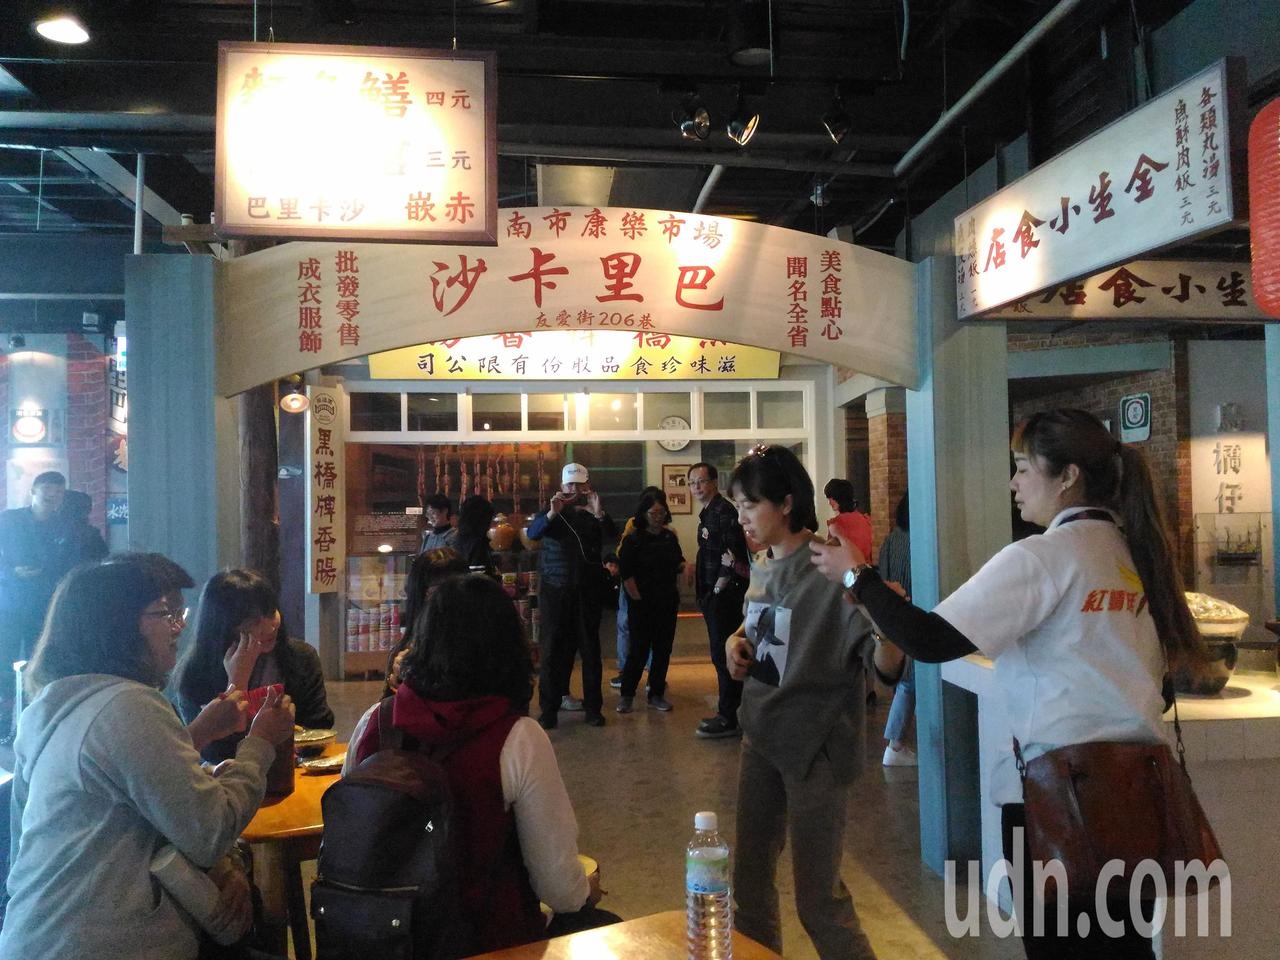 台南市香腸博物館，重現康樂市美食攤熱鬧場景，是遊客拍照熱門地點。記者黃宣翰/攝影